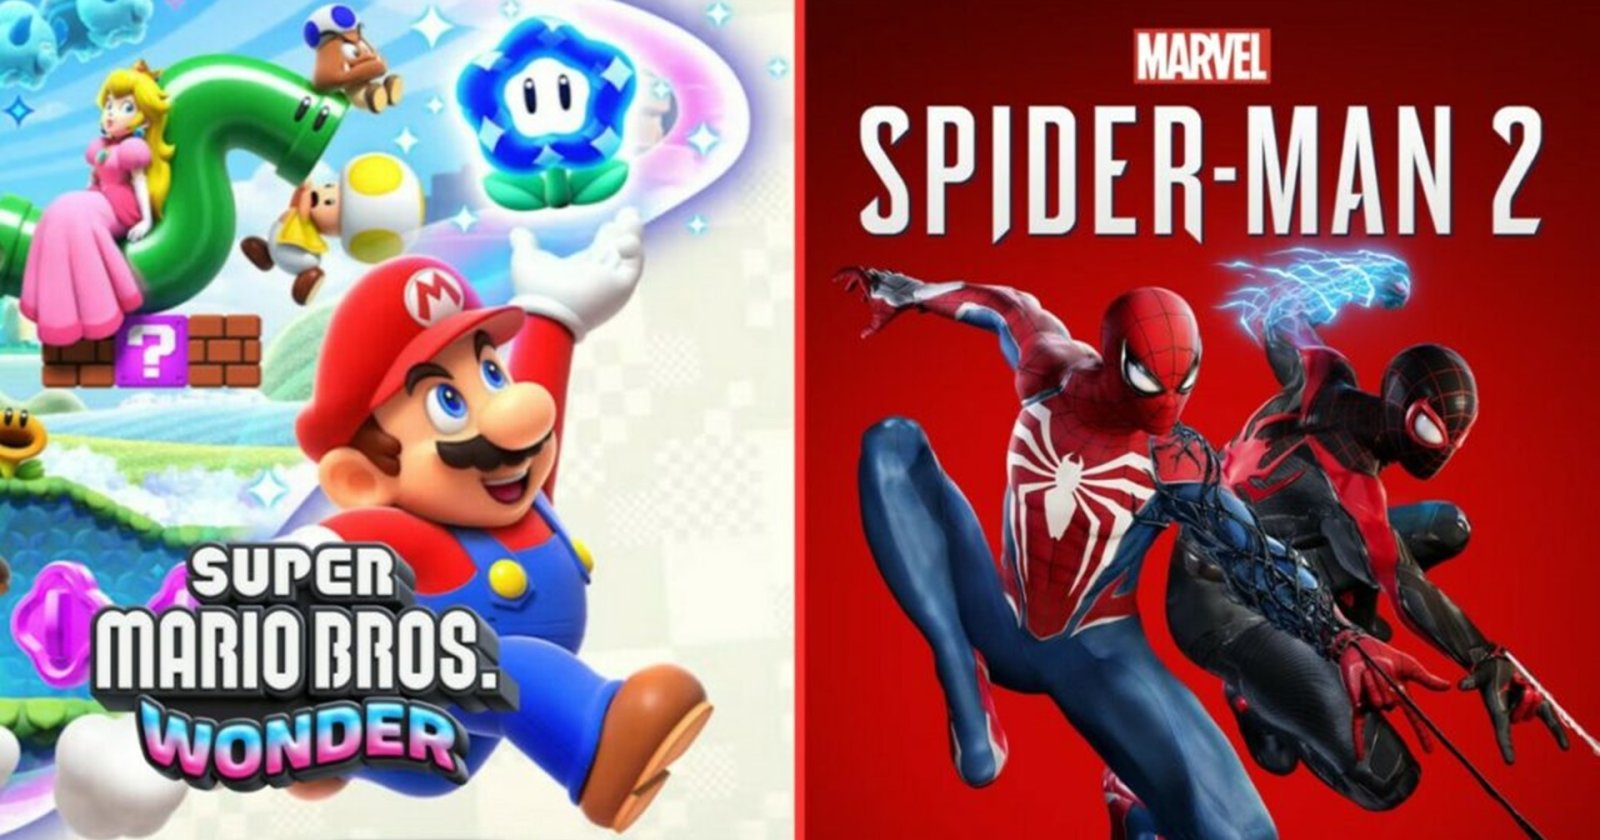 ผู้สร้าง Super Smash Bros. ยกย่อง Spider-Man 2 และ Mario Wonder ว่าเป็นผลงานชิ้นเอก